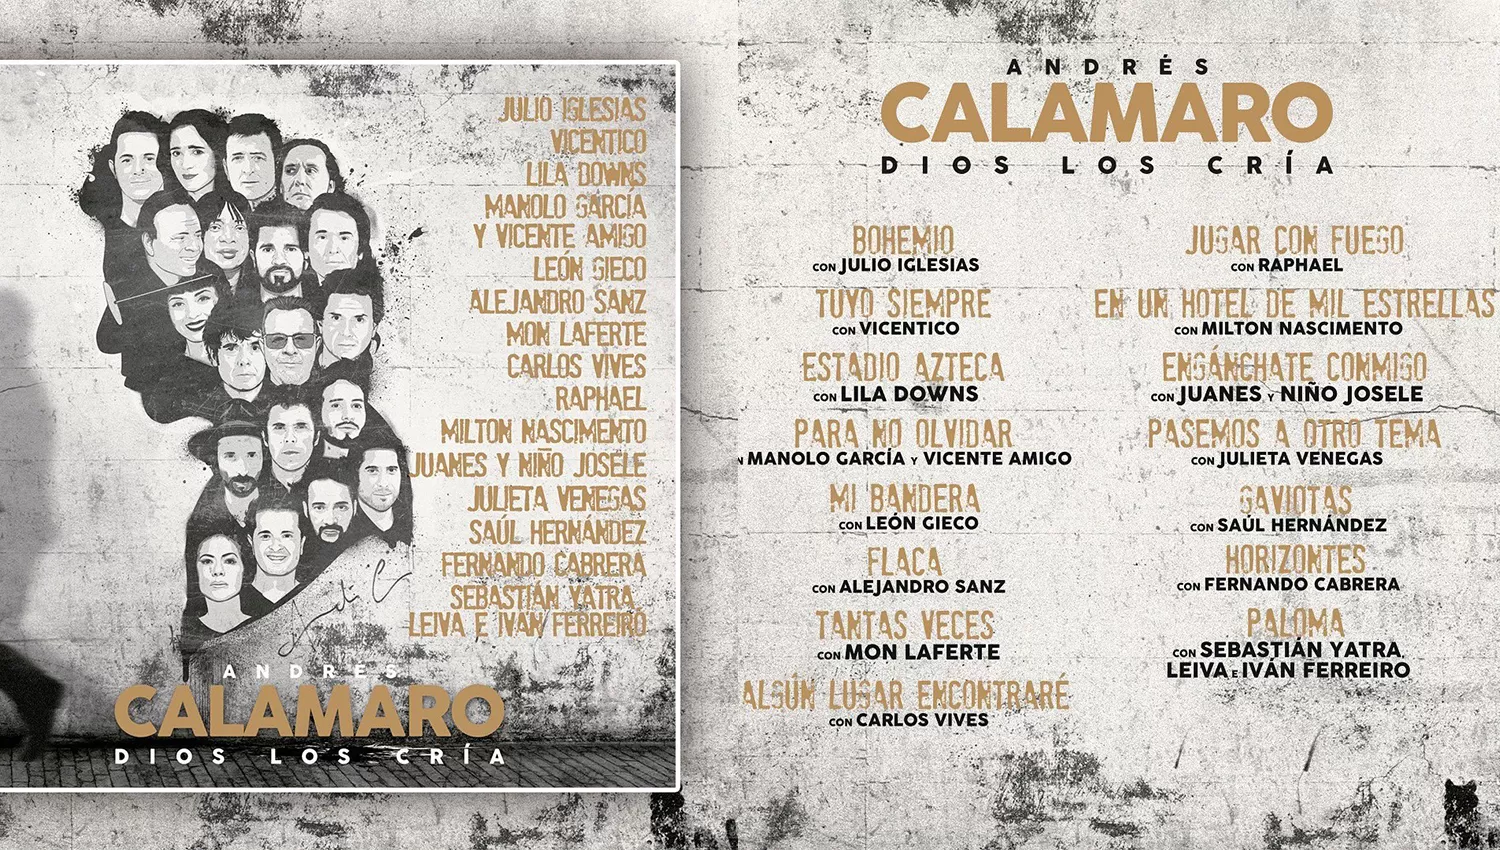 NUEVO MATERIAL DEL SALMÓN. Raphael y Julio Iglesias cantan con Andrés Calamaro en su nuevo disco, Dios los cría.